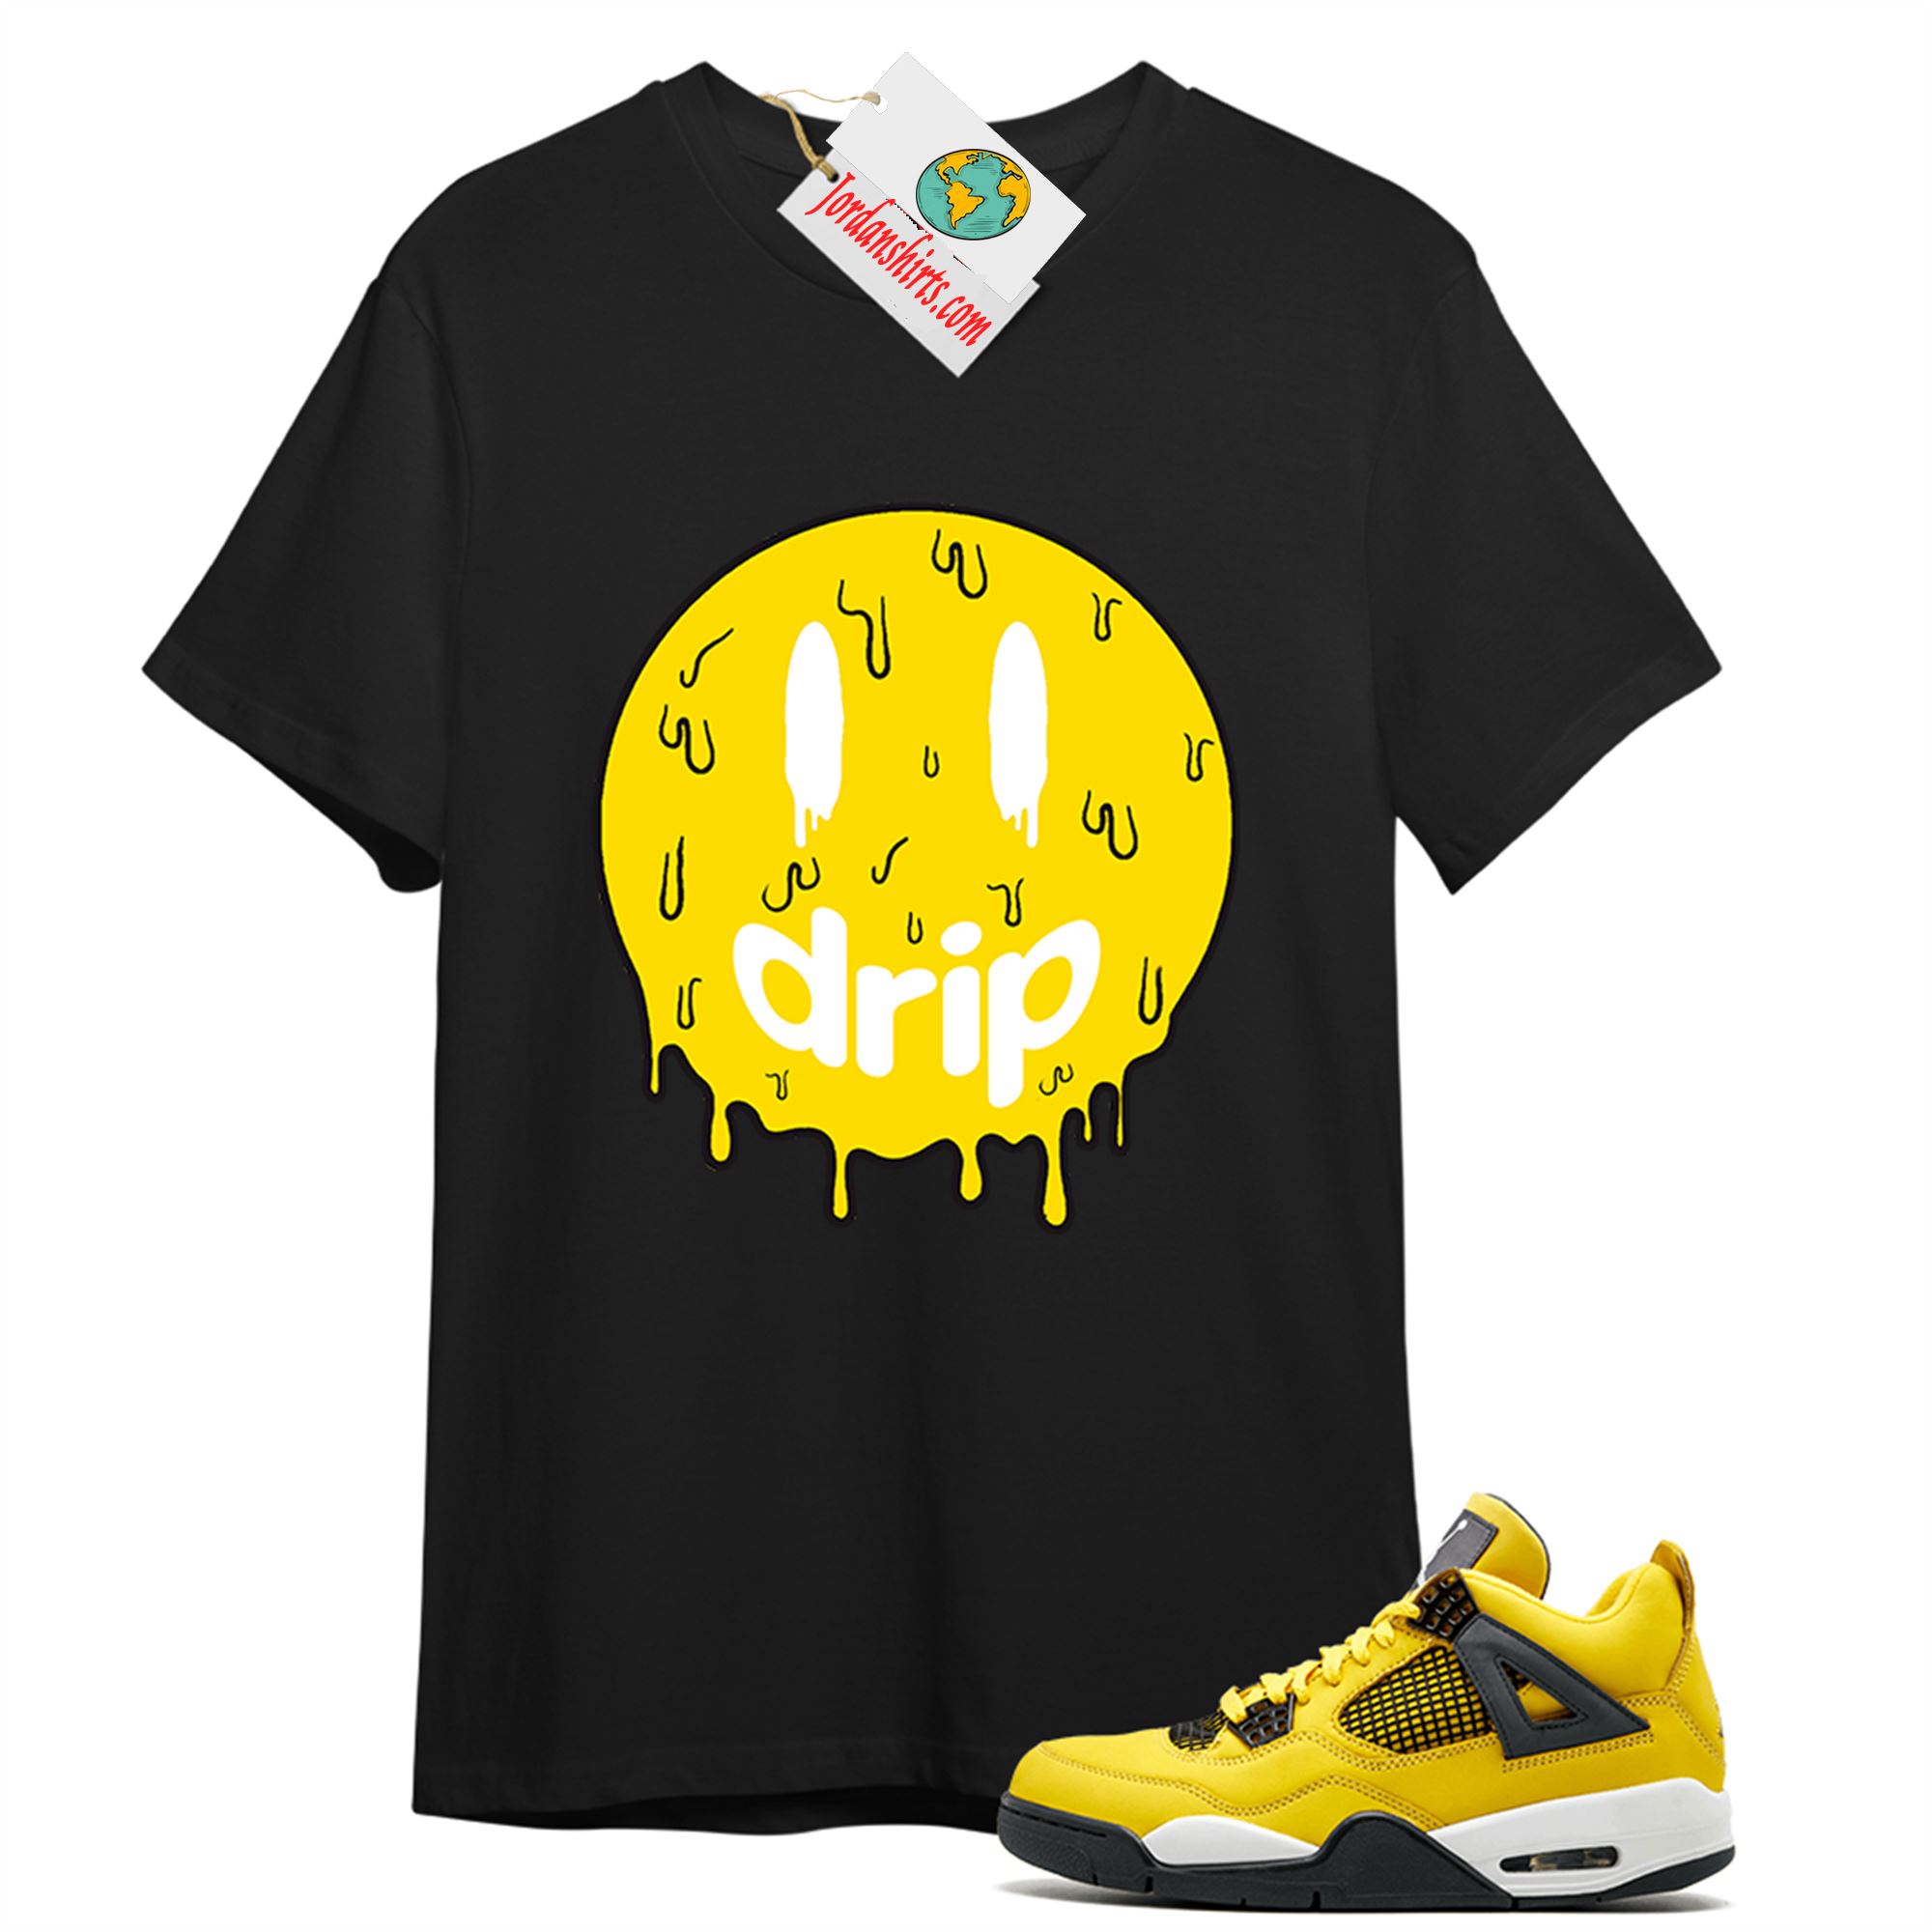 Jordan 4 Shirt, Drip Black T-shirt Air Jordan 4 Tour Yellow Lightning 4s Plus Size Up To 5xl